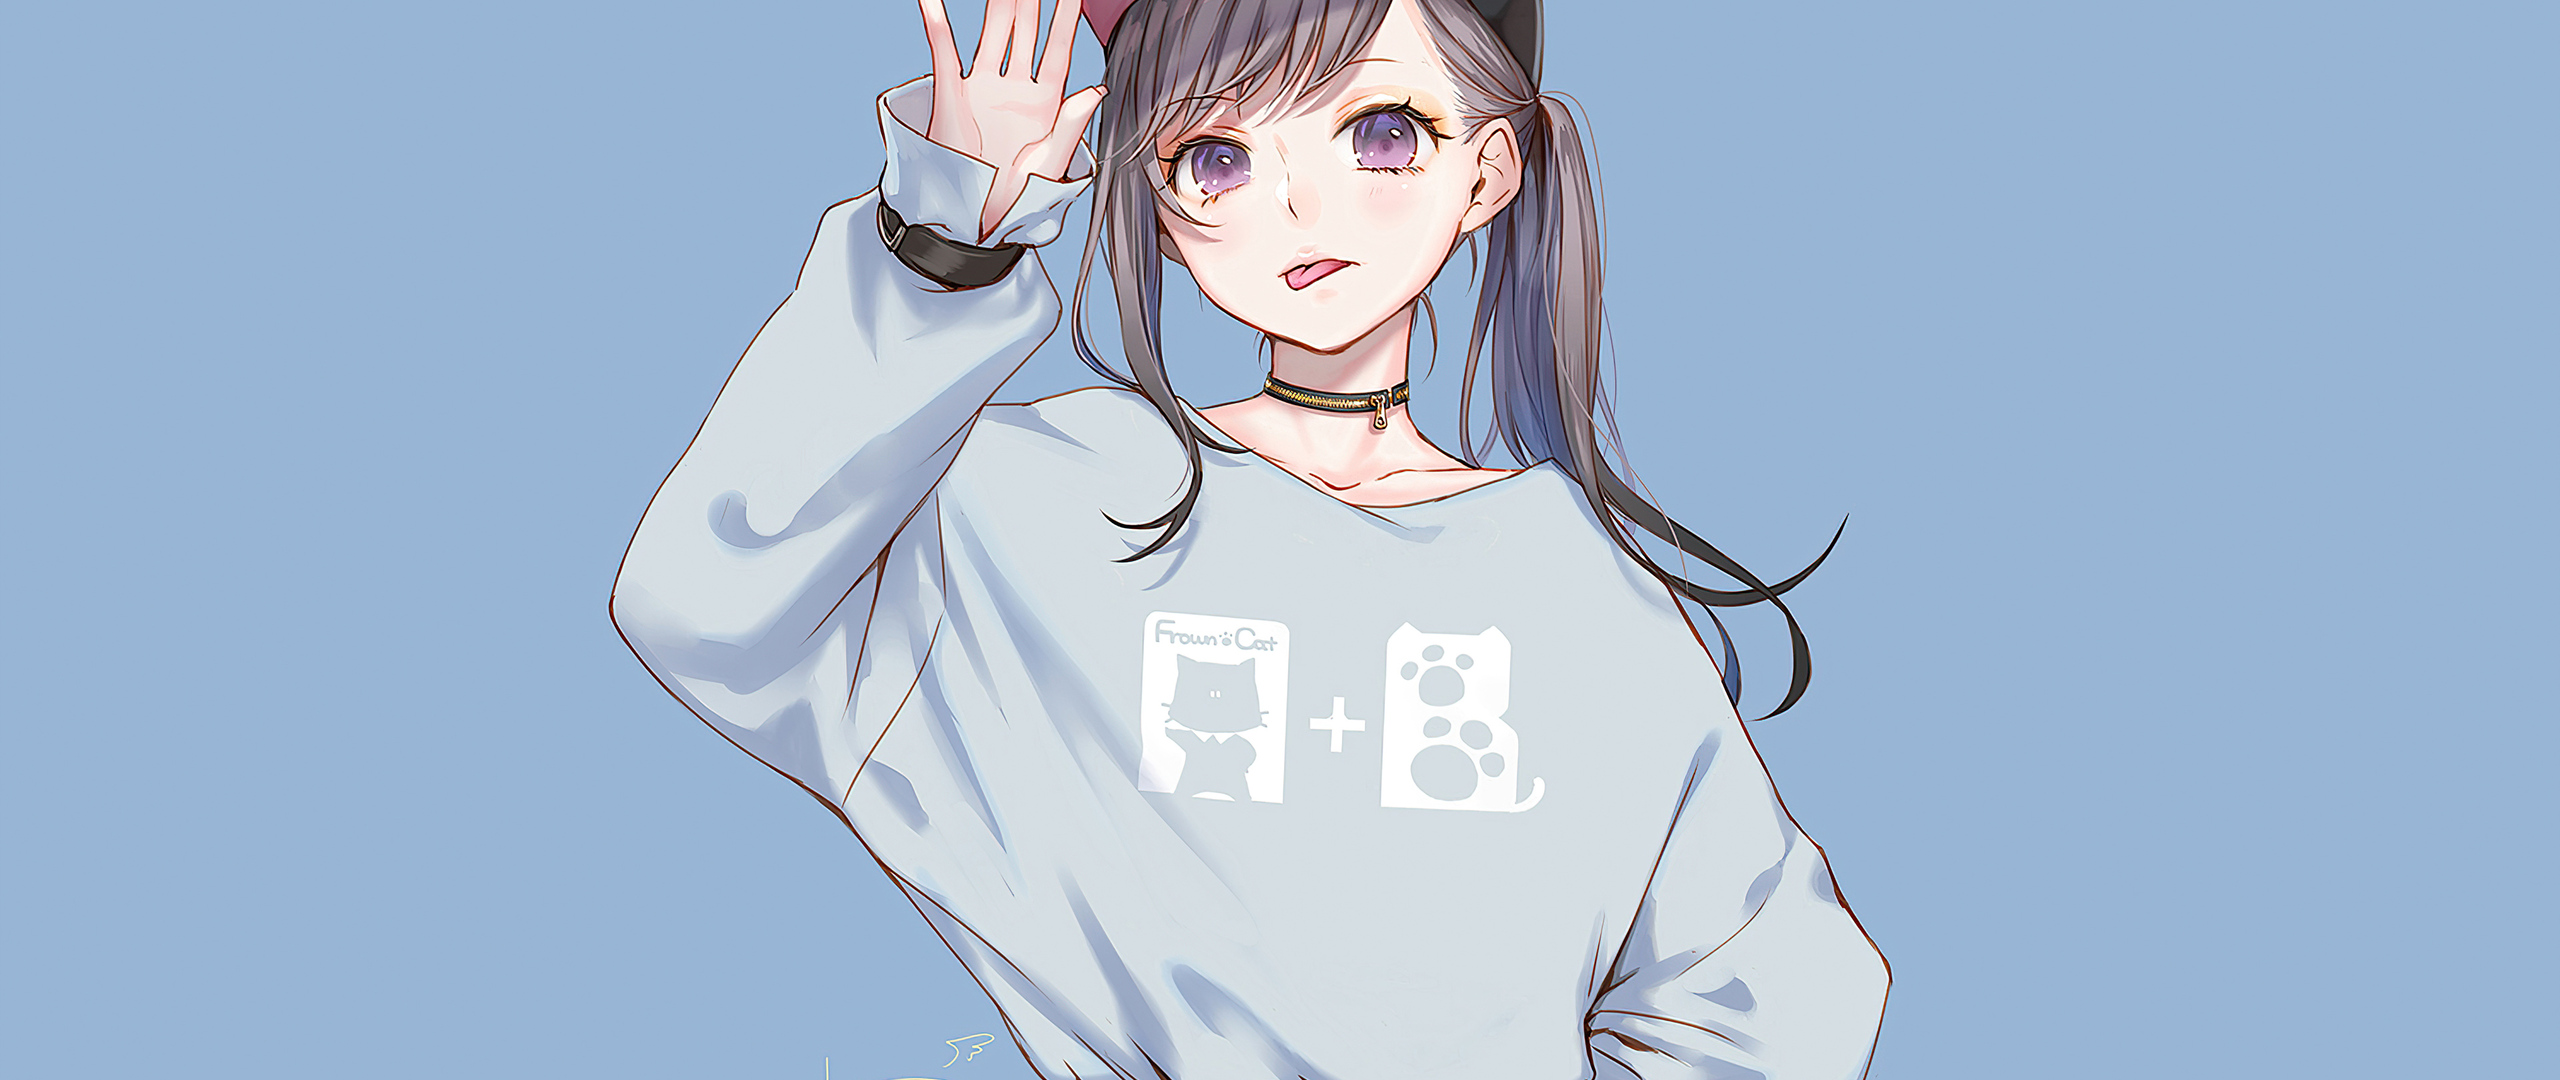 anime-girl-sweater-hoods-4k-p2-2560x1080.jpg